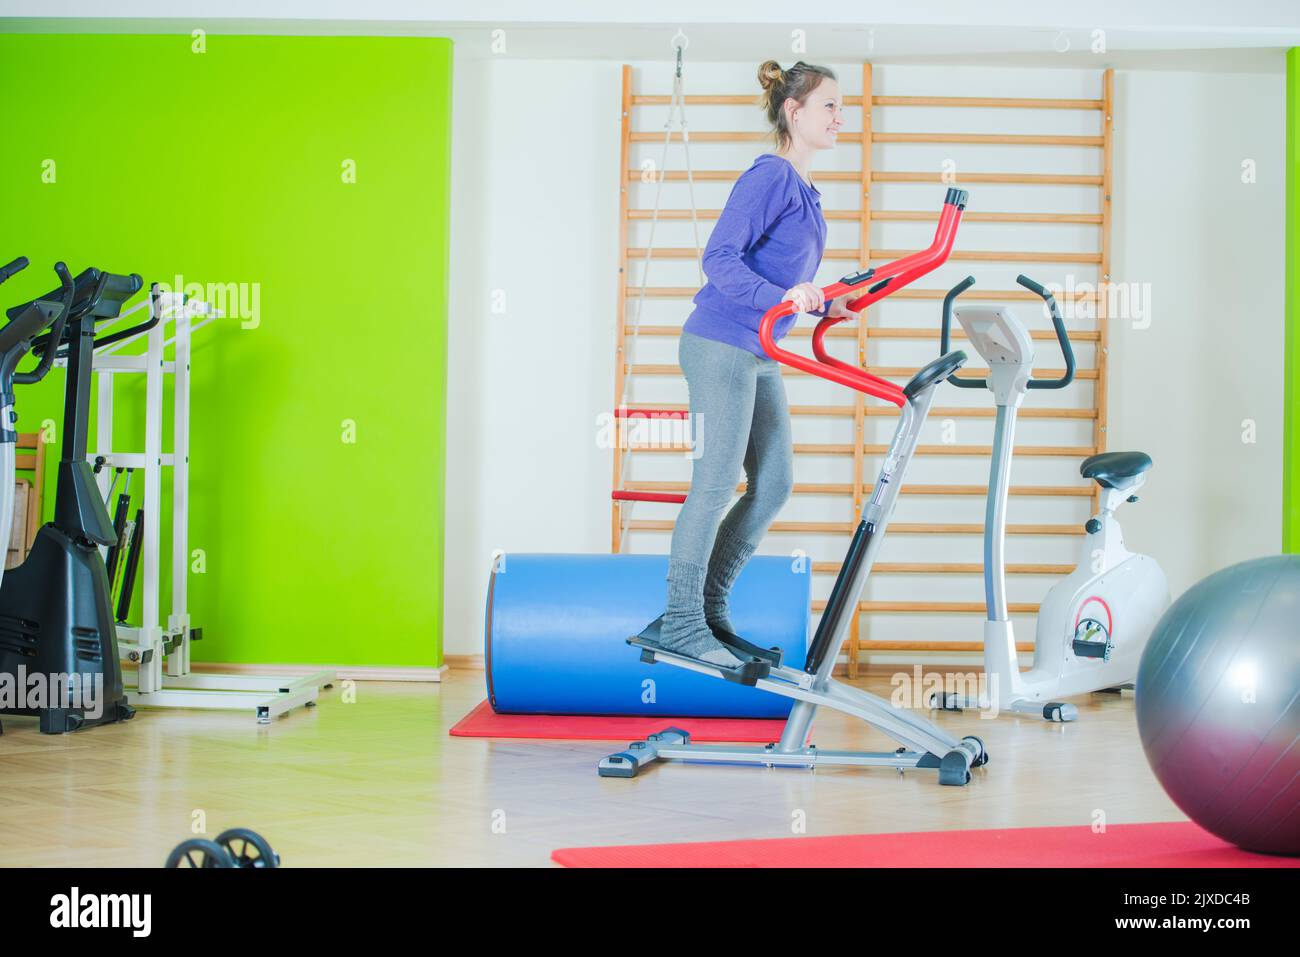 Lächelnde junge Frau, die ihr Fitness-Workout auf einem Cross-Trainer-Gerät macht. Fitnessraum mit verschiedenen Trainingsgeräten im Hintergrund. Stockfoto